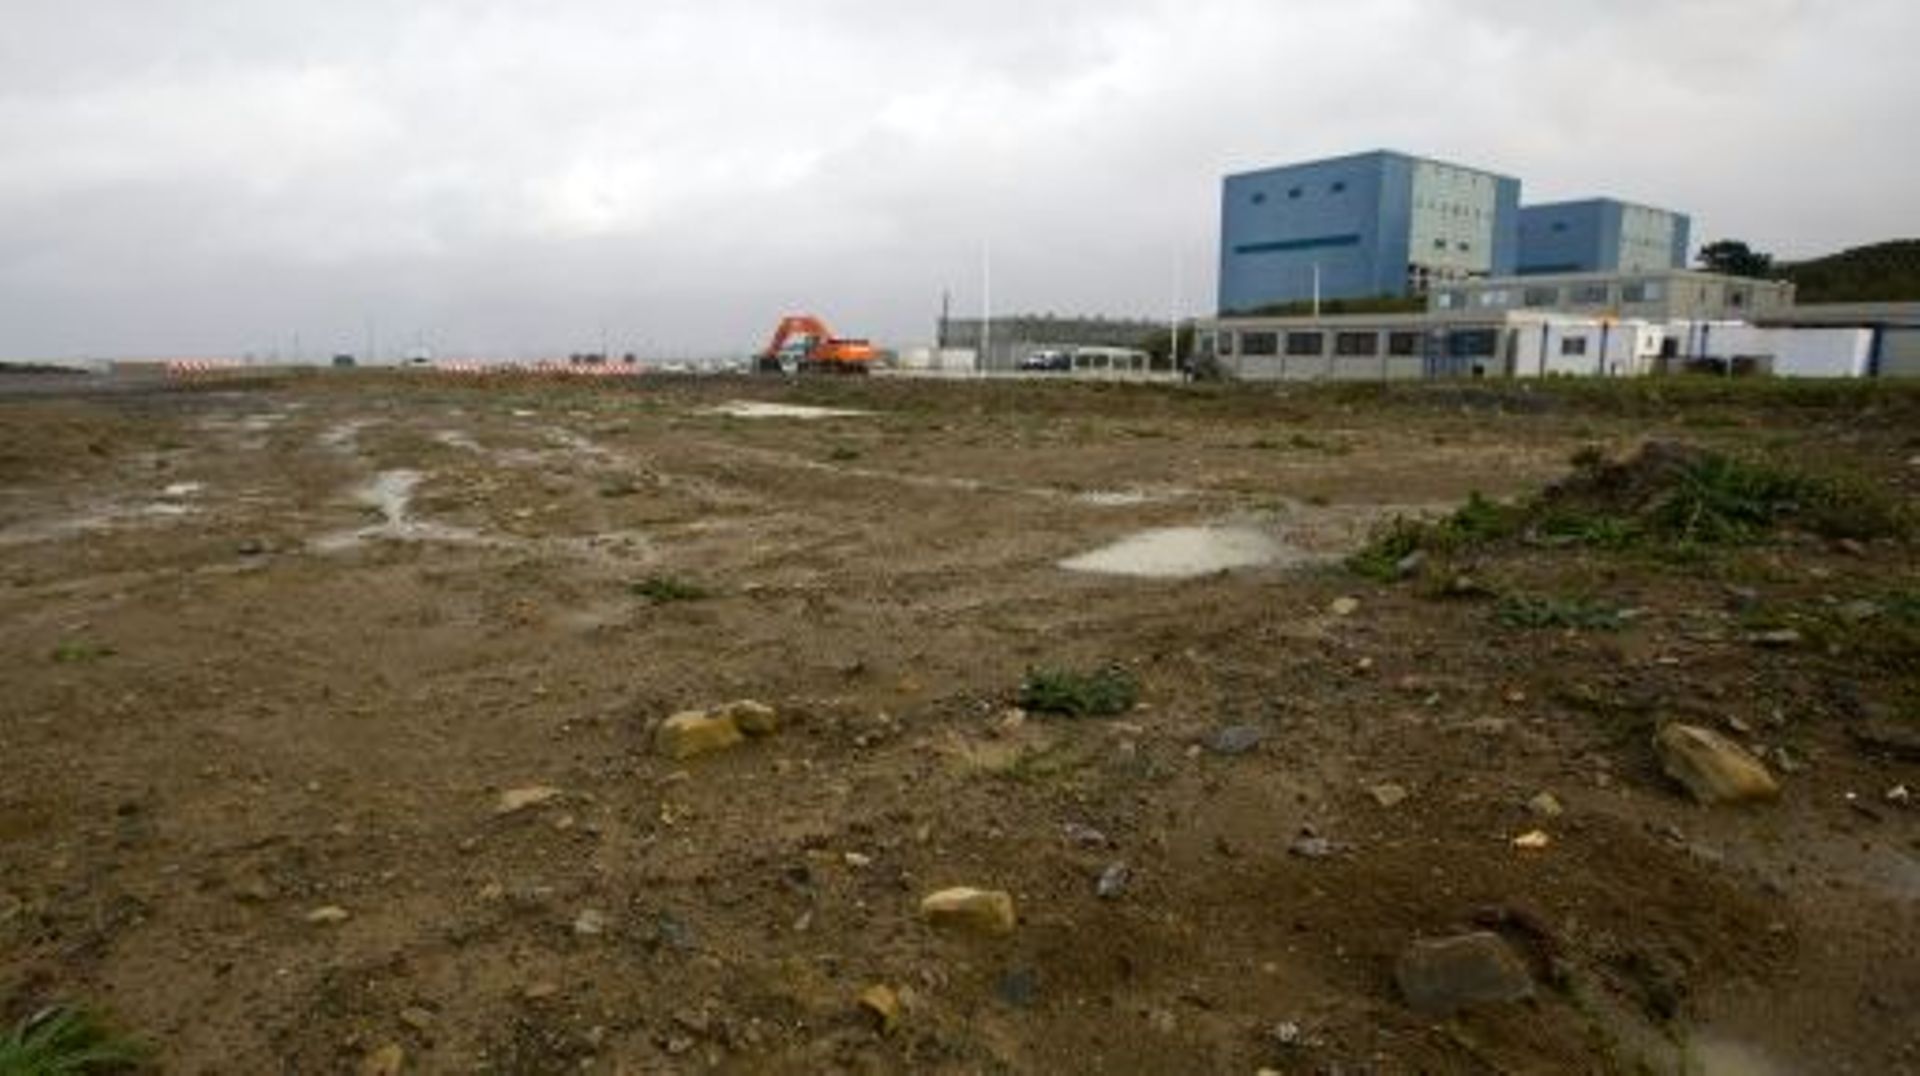 Un des sites de Hinkley Point, en Angleterre, où doivent être construits deux EPR par EDF, le 21 octobre 2013